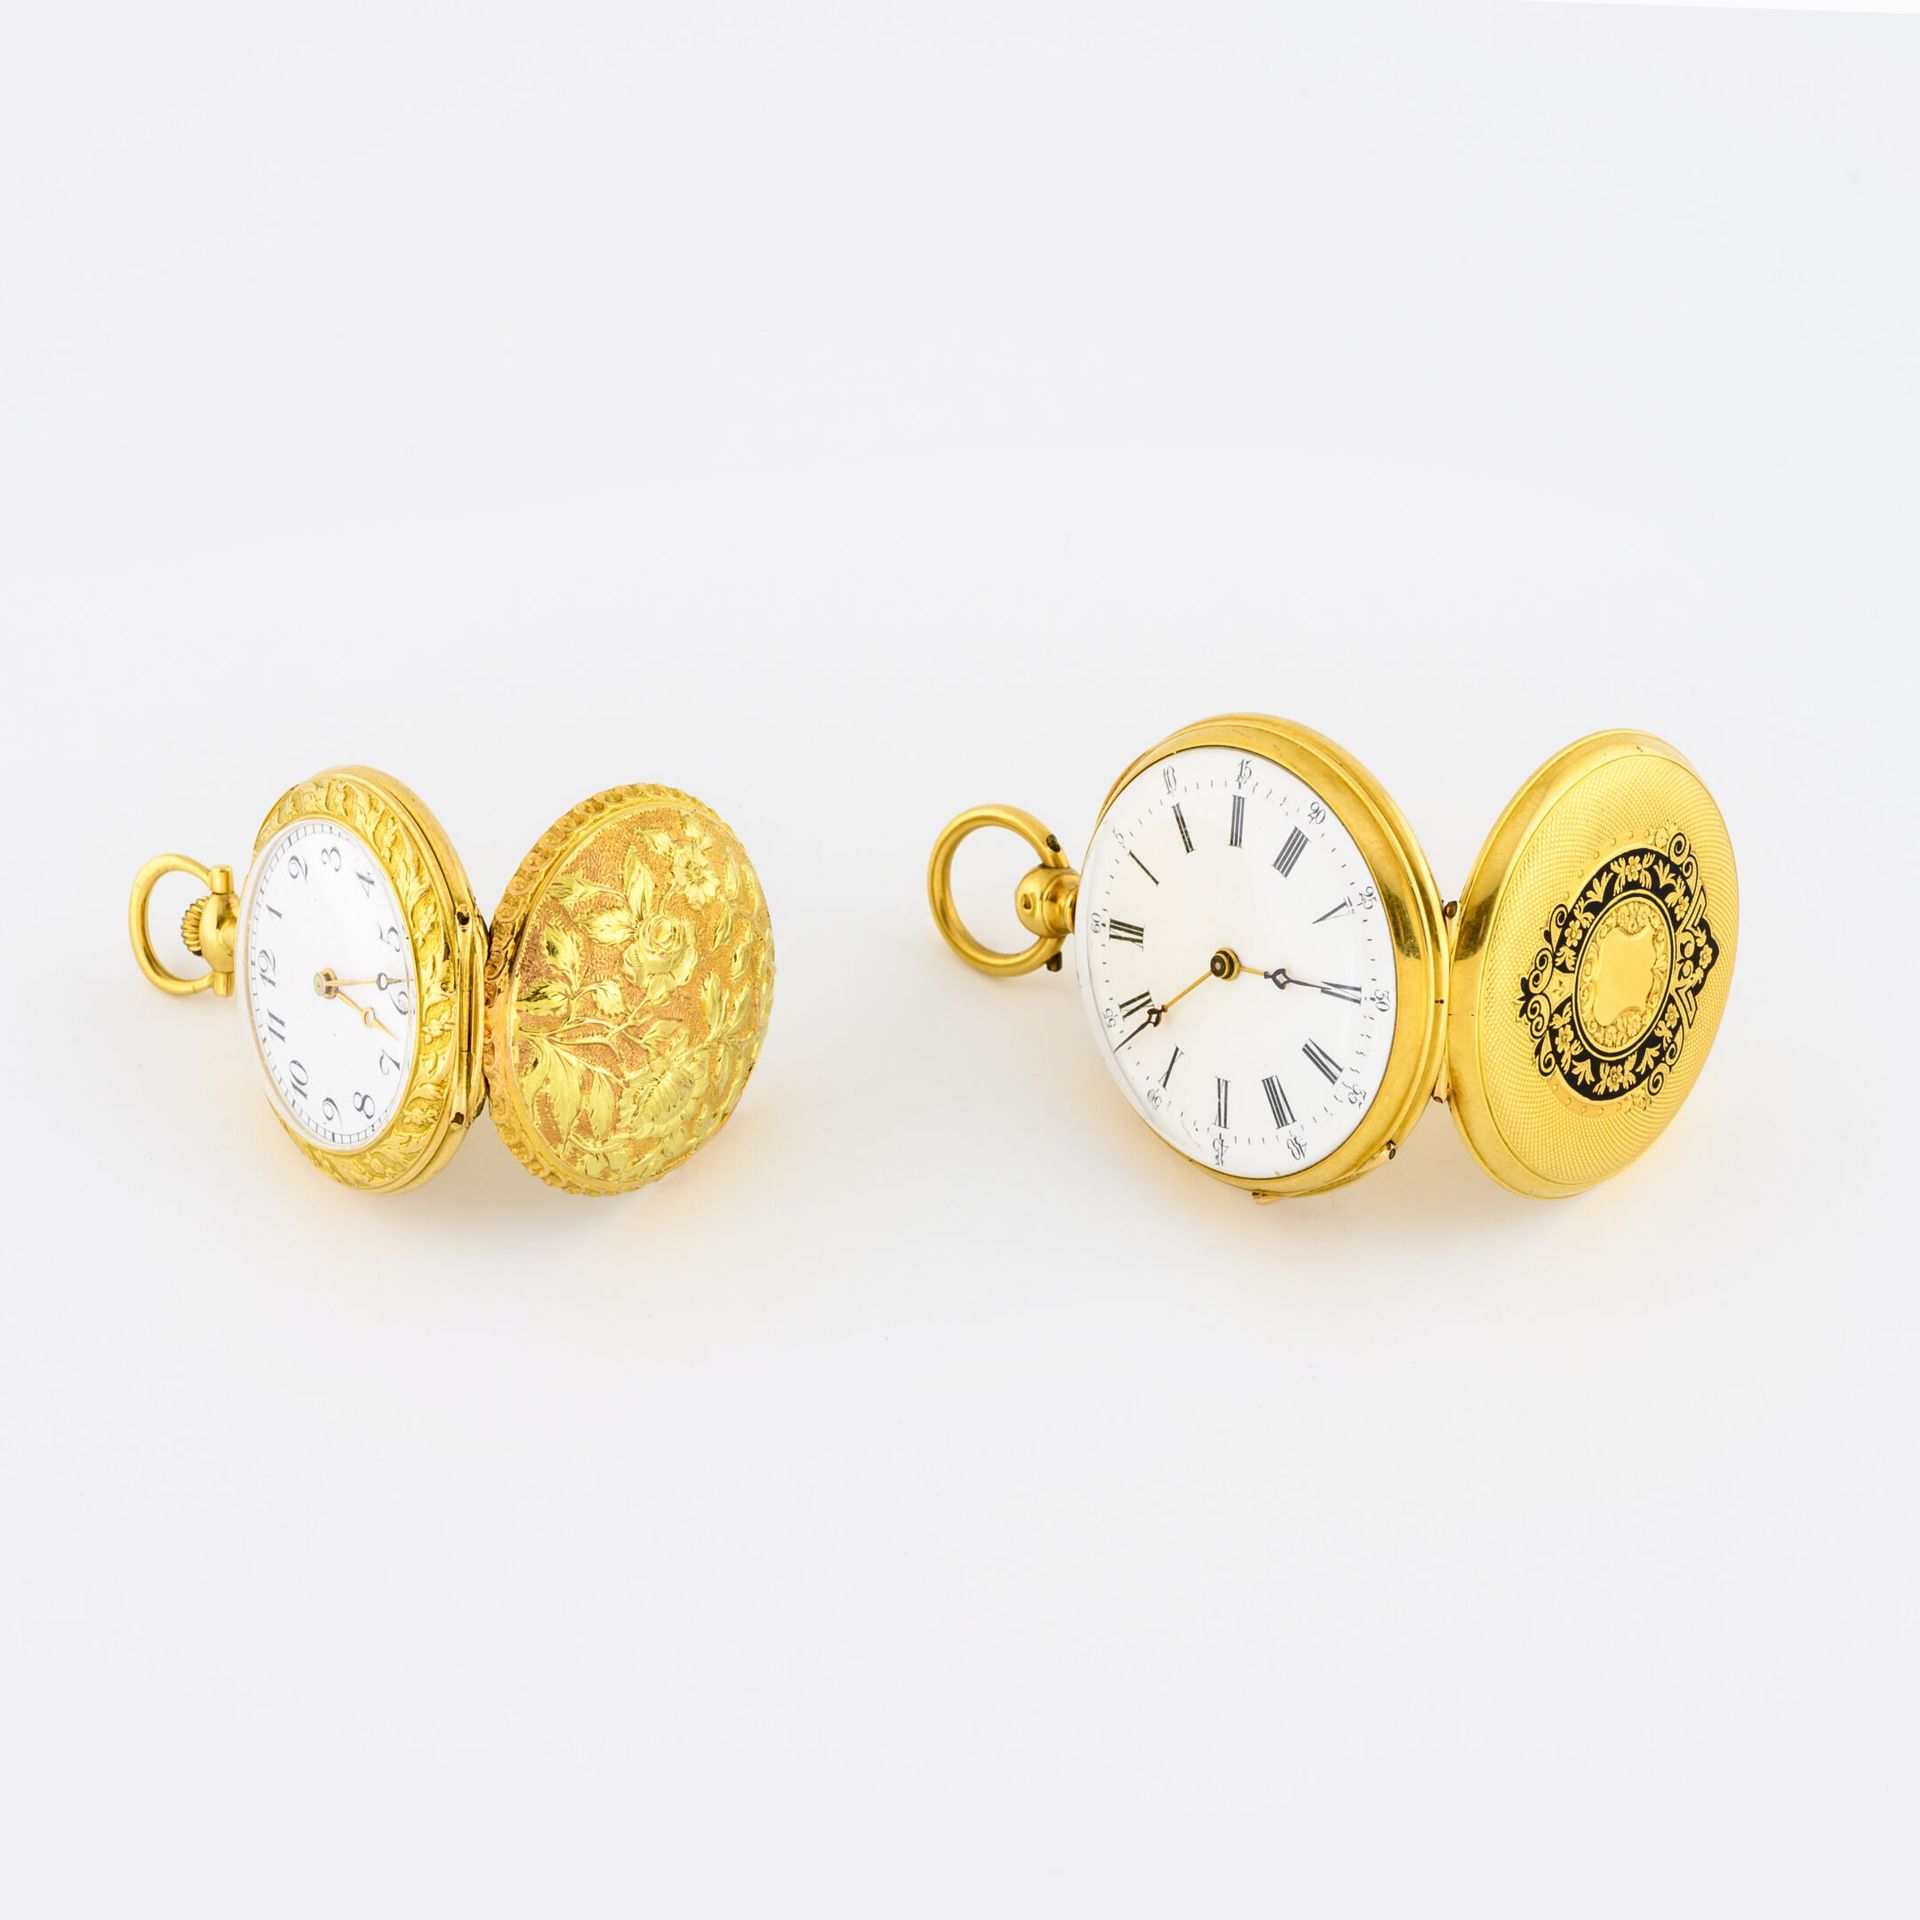 Lot en or jaune (750) comprenant : - Uhr mit Kragen

Hinterer Deckel mit getrieb&hellip;